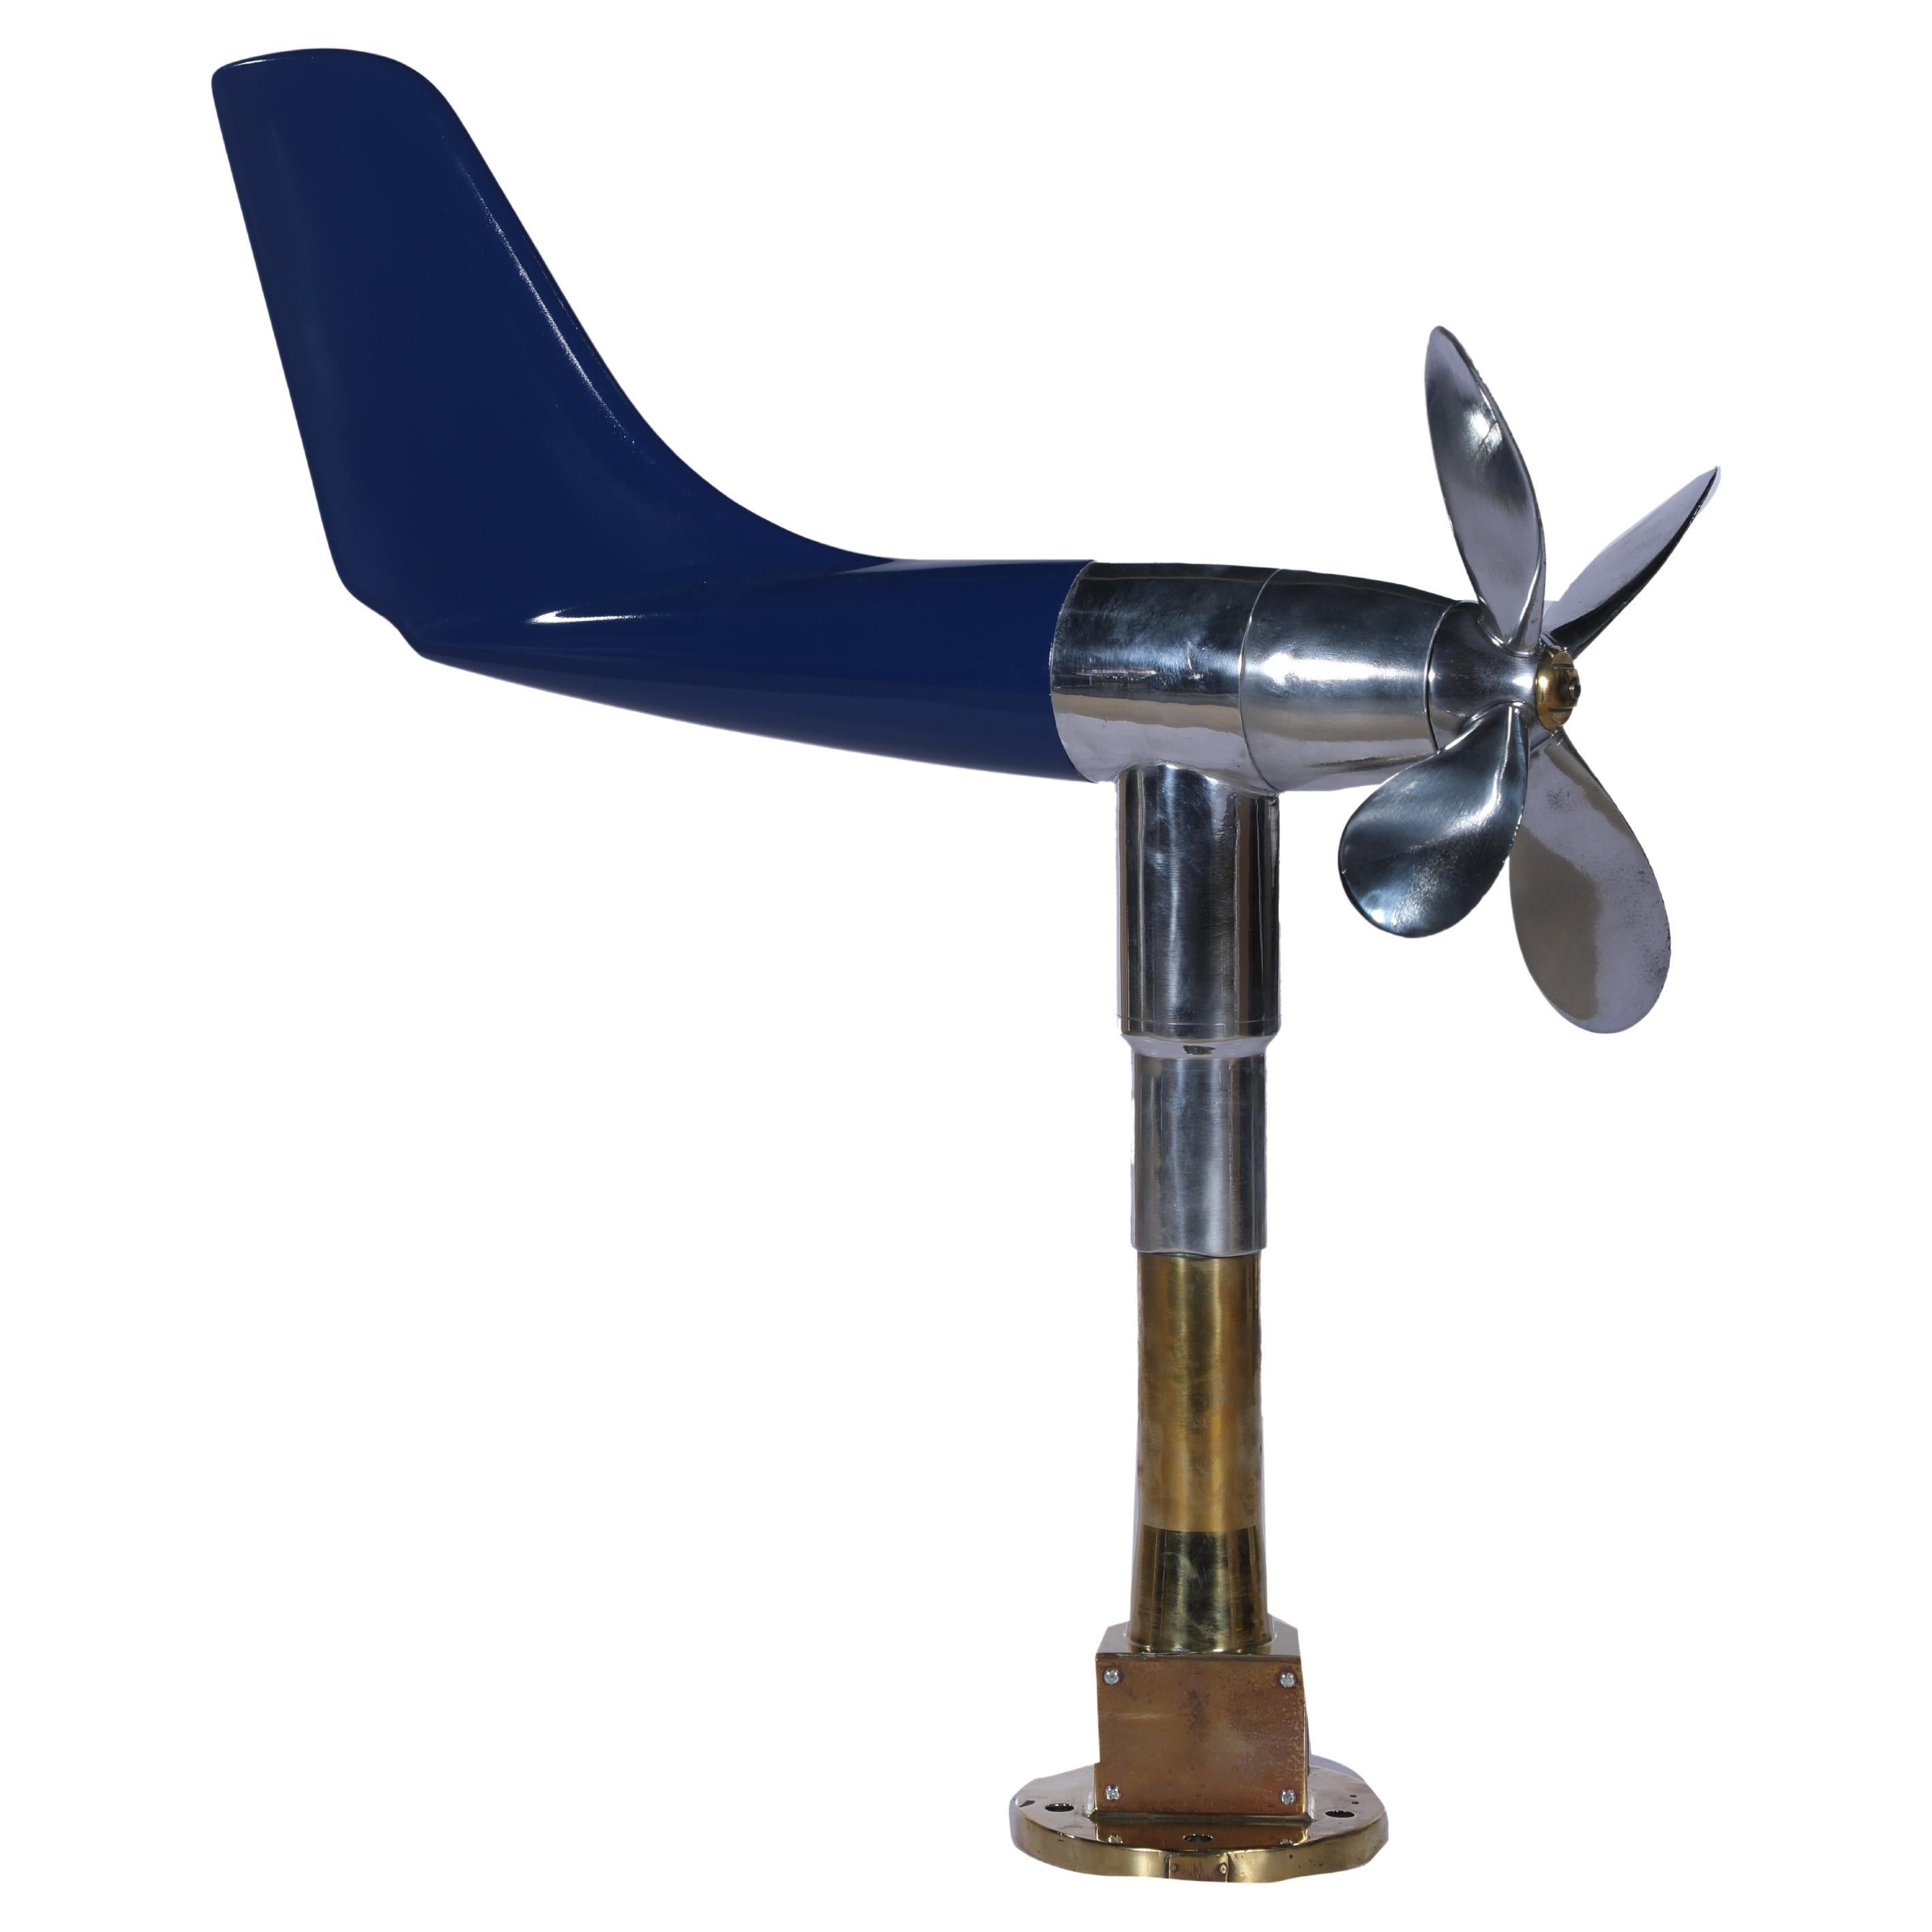 Schiffsanemometer und Aerovane als kinetische Skulptur wiederverwendet